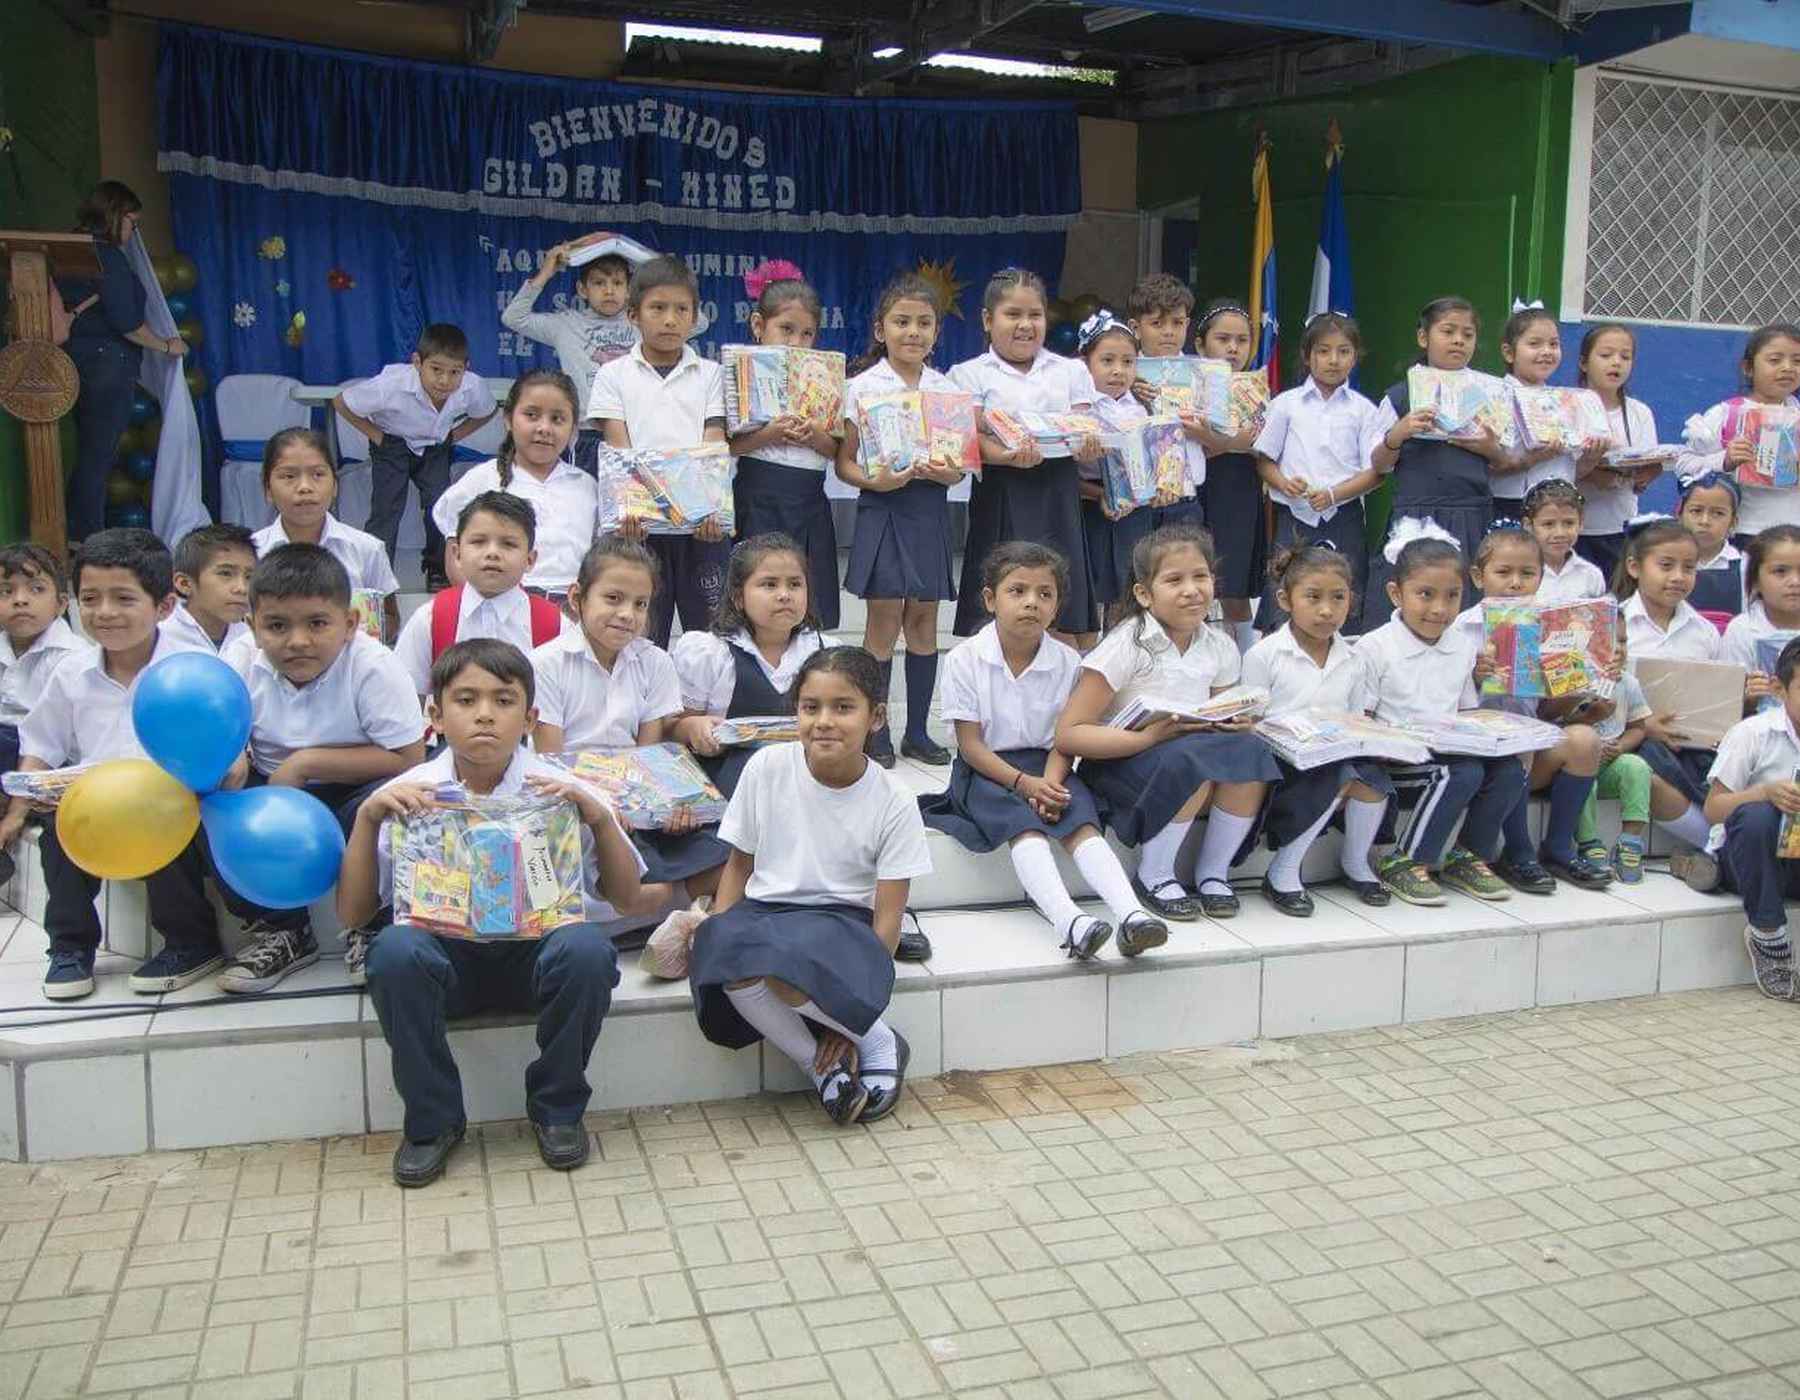 Los niños en Nicaragua visten uniformes escolares y sonríen mientras sostienen útiles escolares.